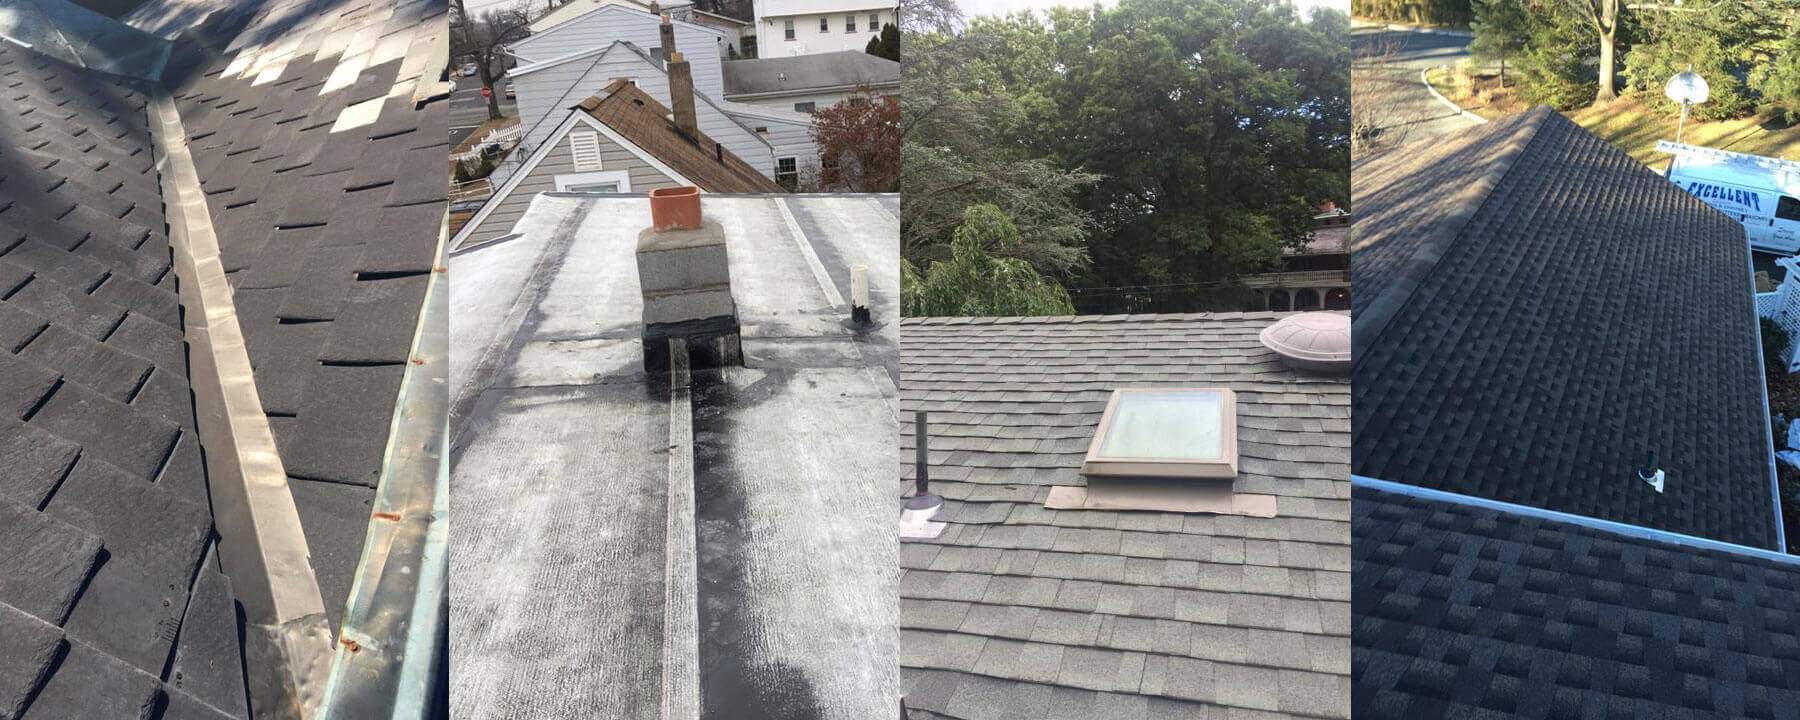 Roof Repair Service Saddle Brook NJ